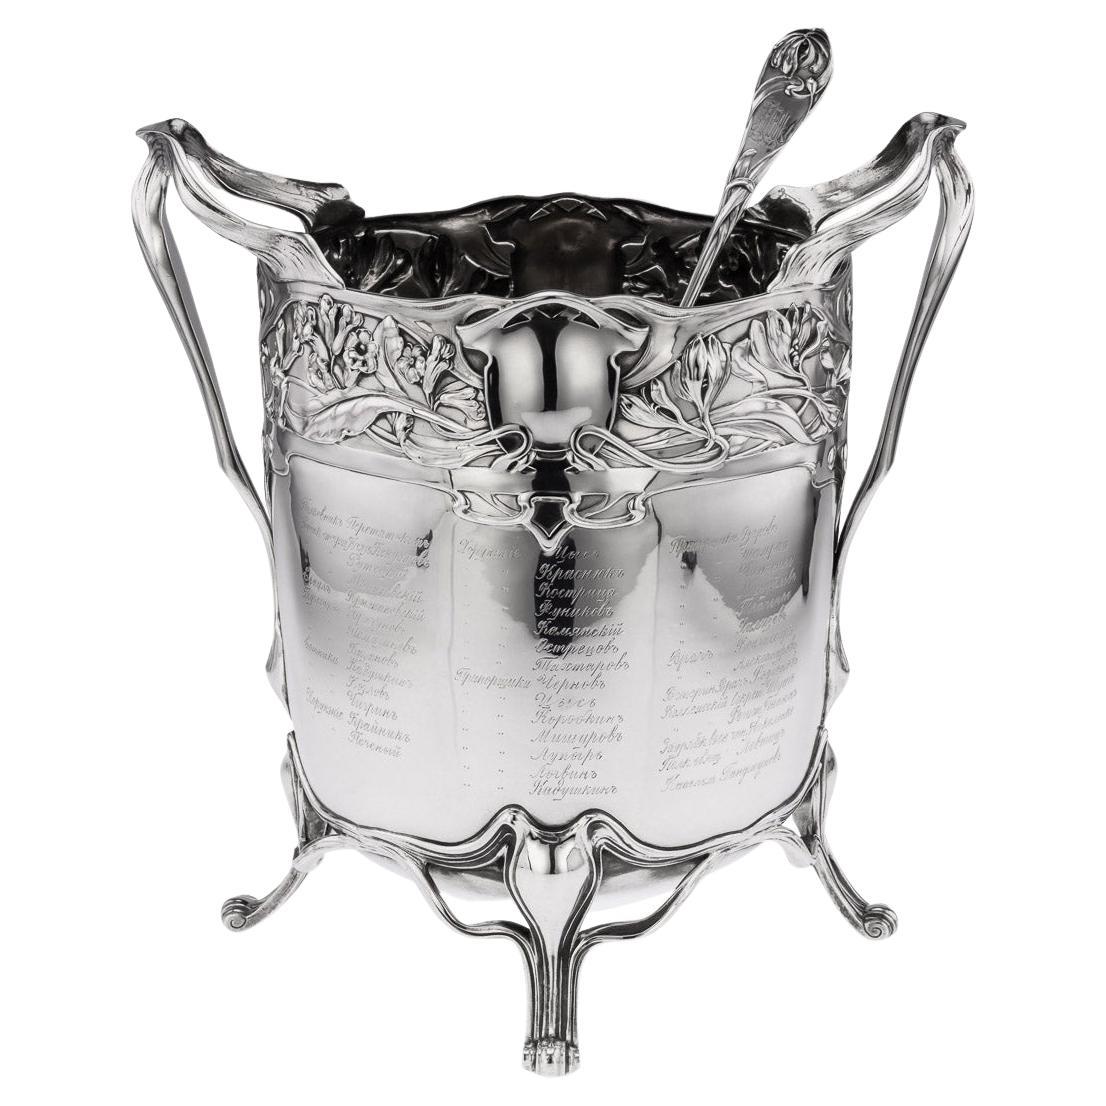 20th Century German Art Nouveau Solid Silver Punch Bowl & Ladle, c.1900